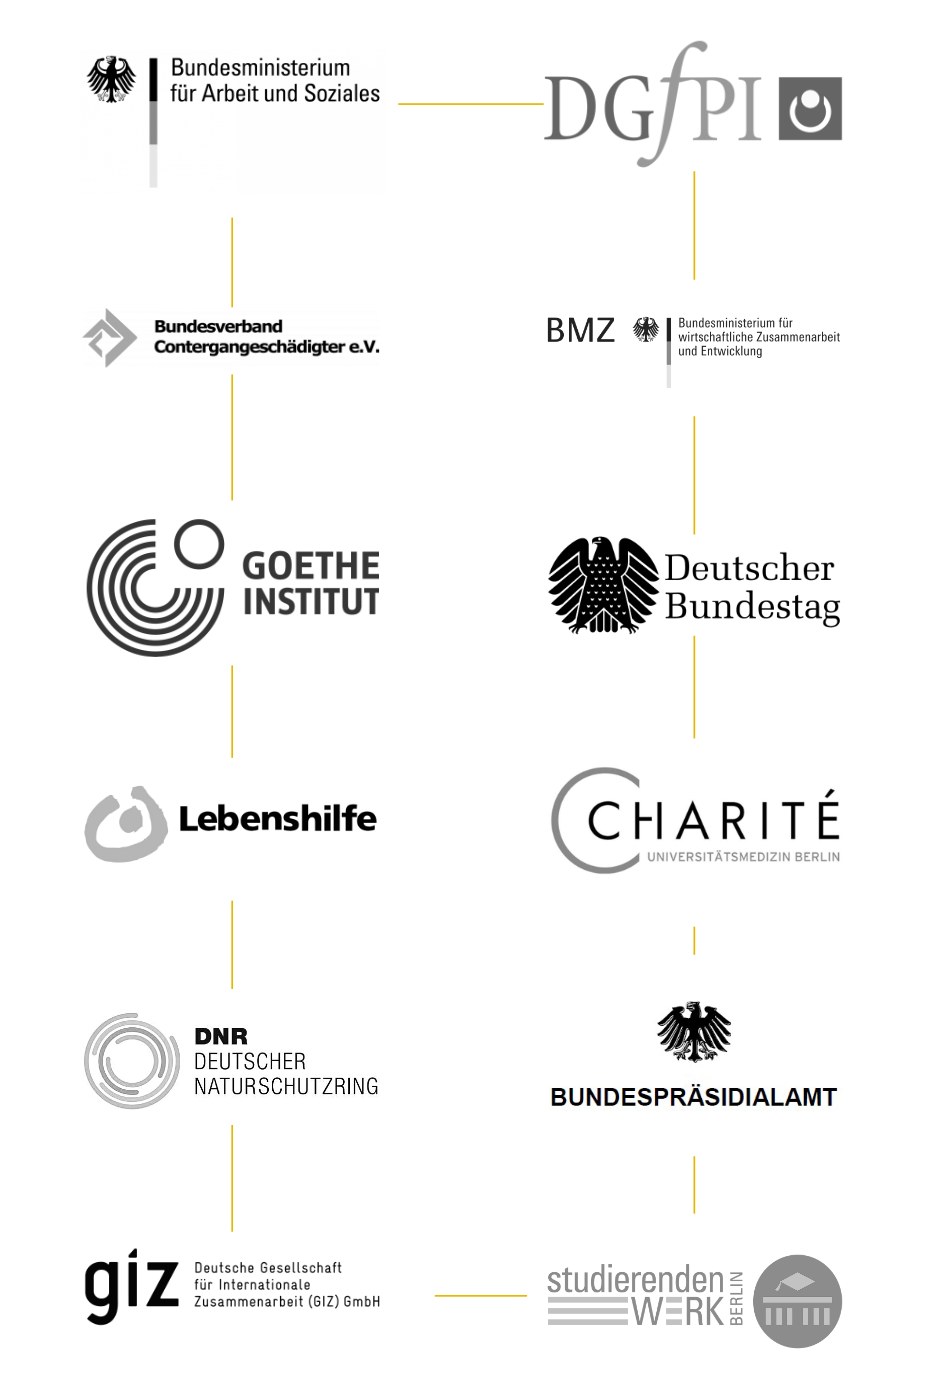 Grafik mit den Logos der Kunden, für die Orelon tätig war: Deutscher Bundestag, Goethe Institut, GIZ, BMZ, Bundespräsidialamt, Auswärtiges Amt und Bundesministerium für Arbeit und Soziales.